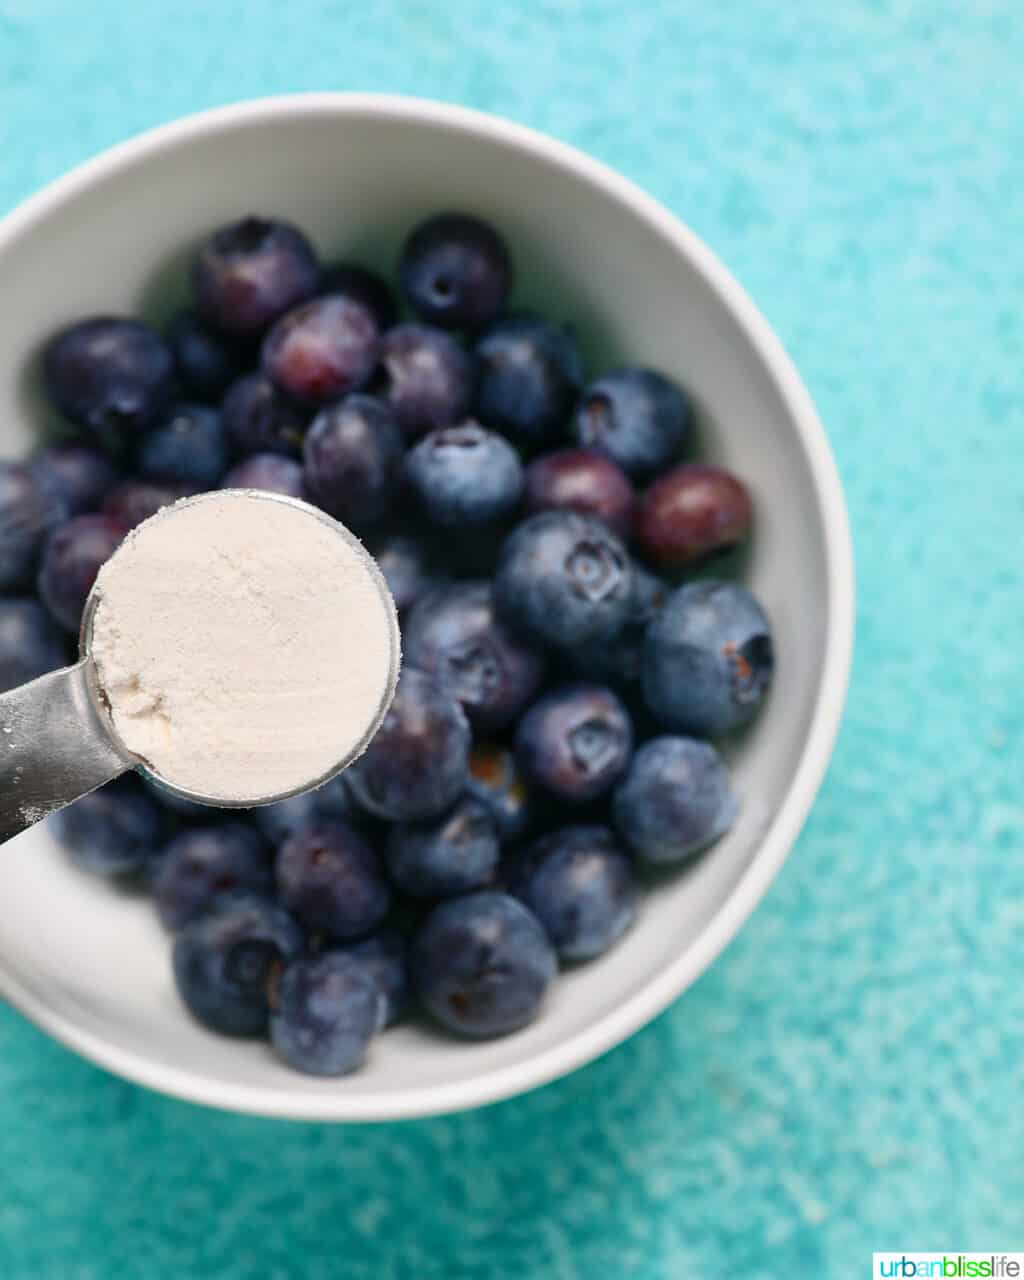 spoon full of flour over a white bowl full of blueberries.